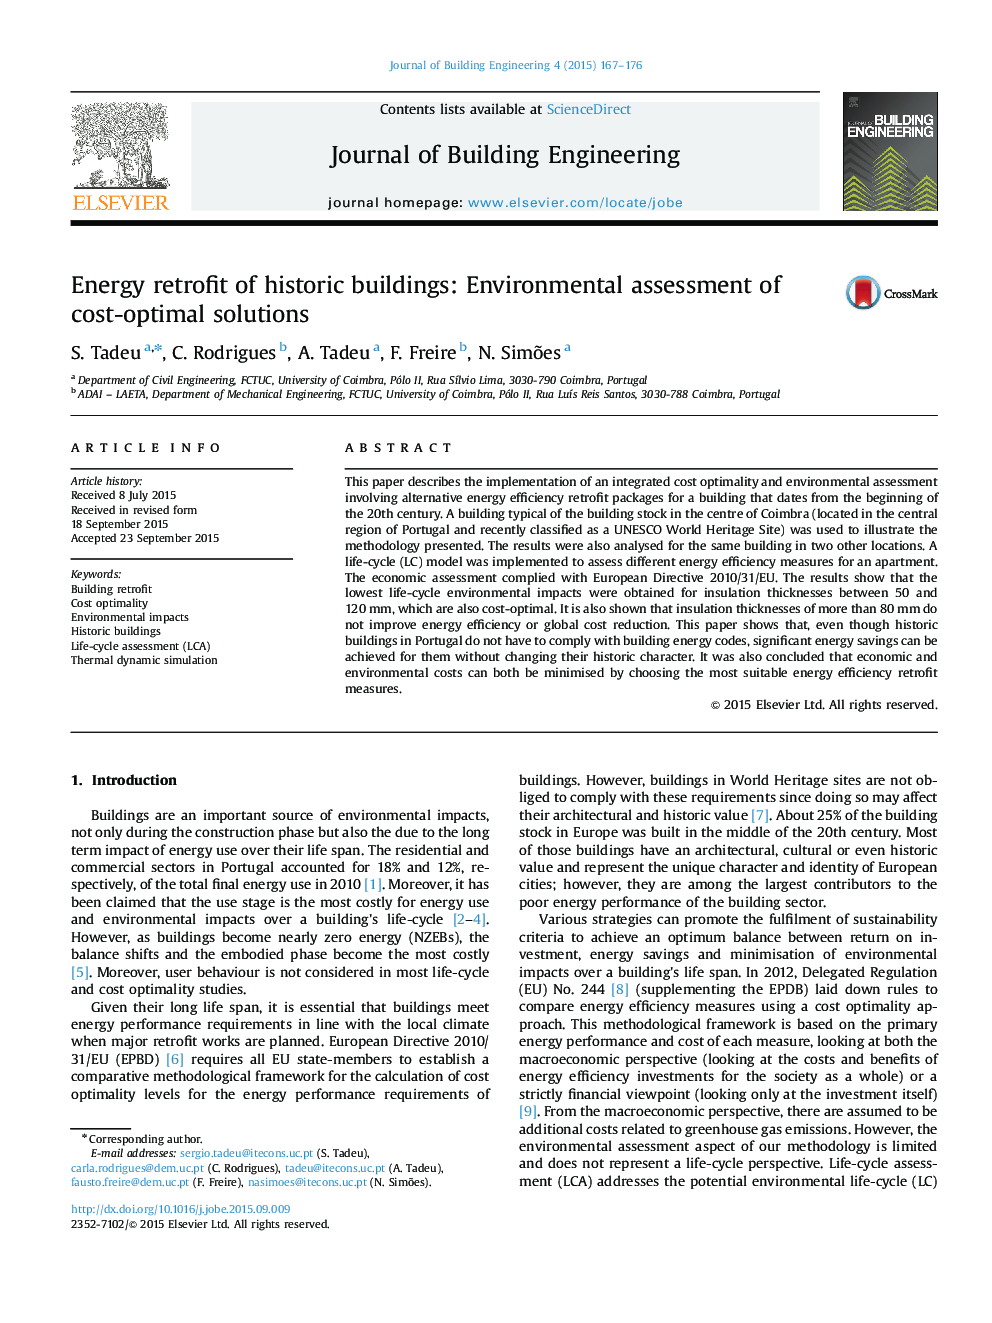 تکمیل انرژی ساختمان های تاریخی: ارزیابی محیط زیست از راه حل های بهینه هزینه 